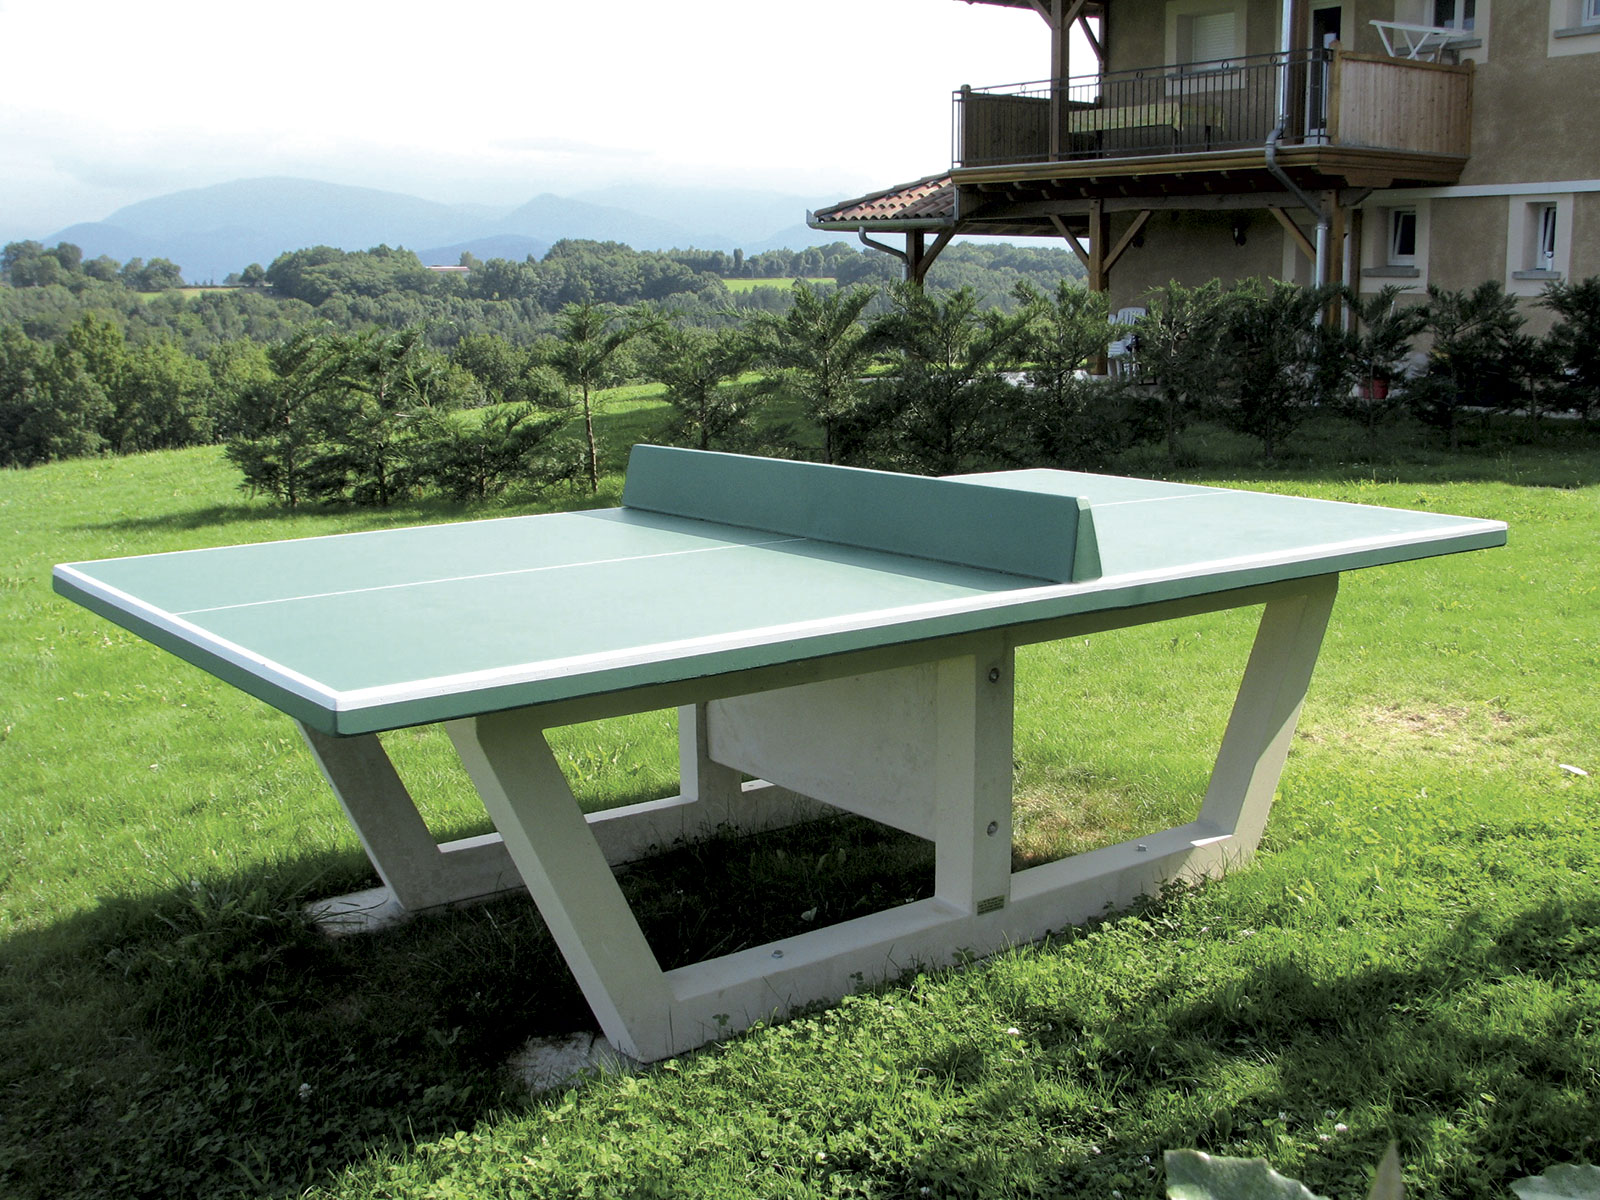 Table de ping-pong en béton